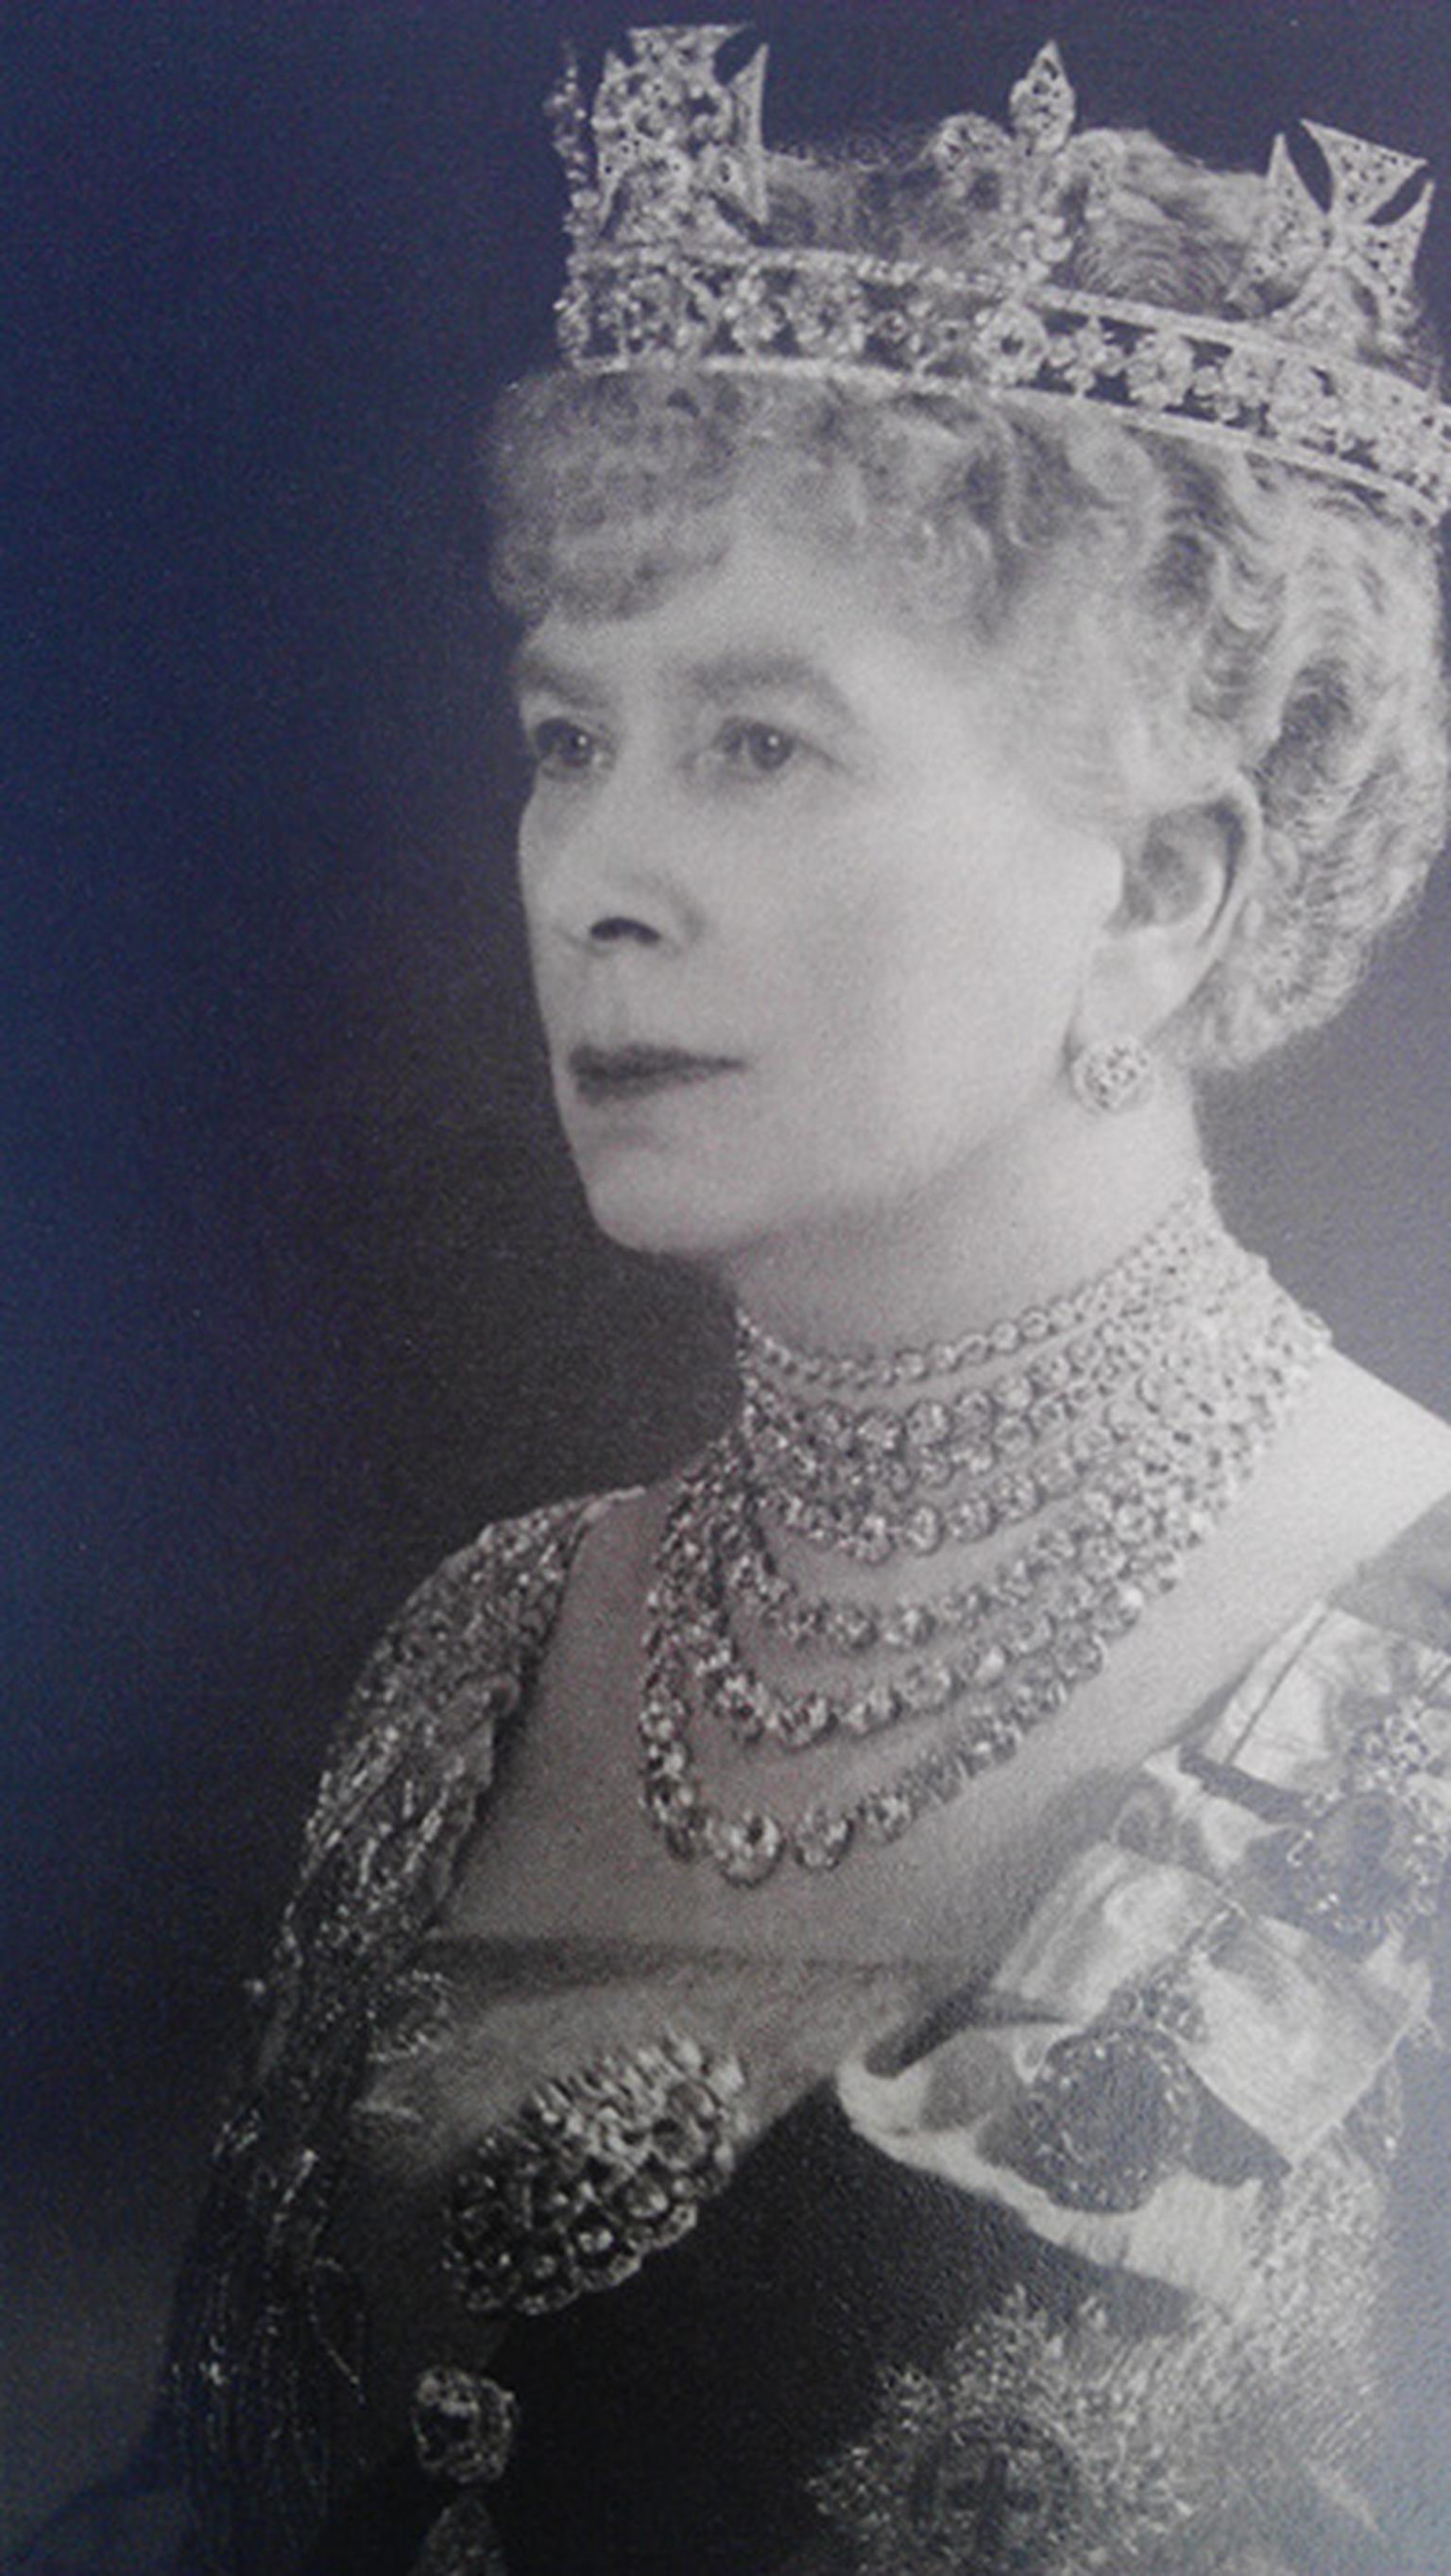 Queen-Mary-1938-wearing-Queen-Alexandra's-collet-necklace.jpg